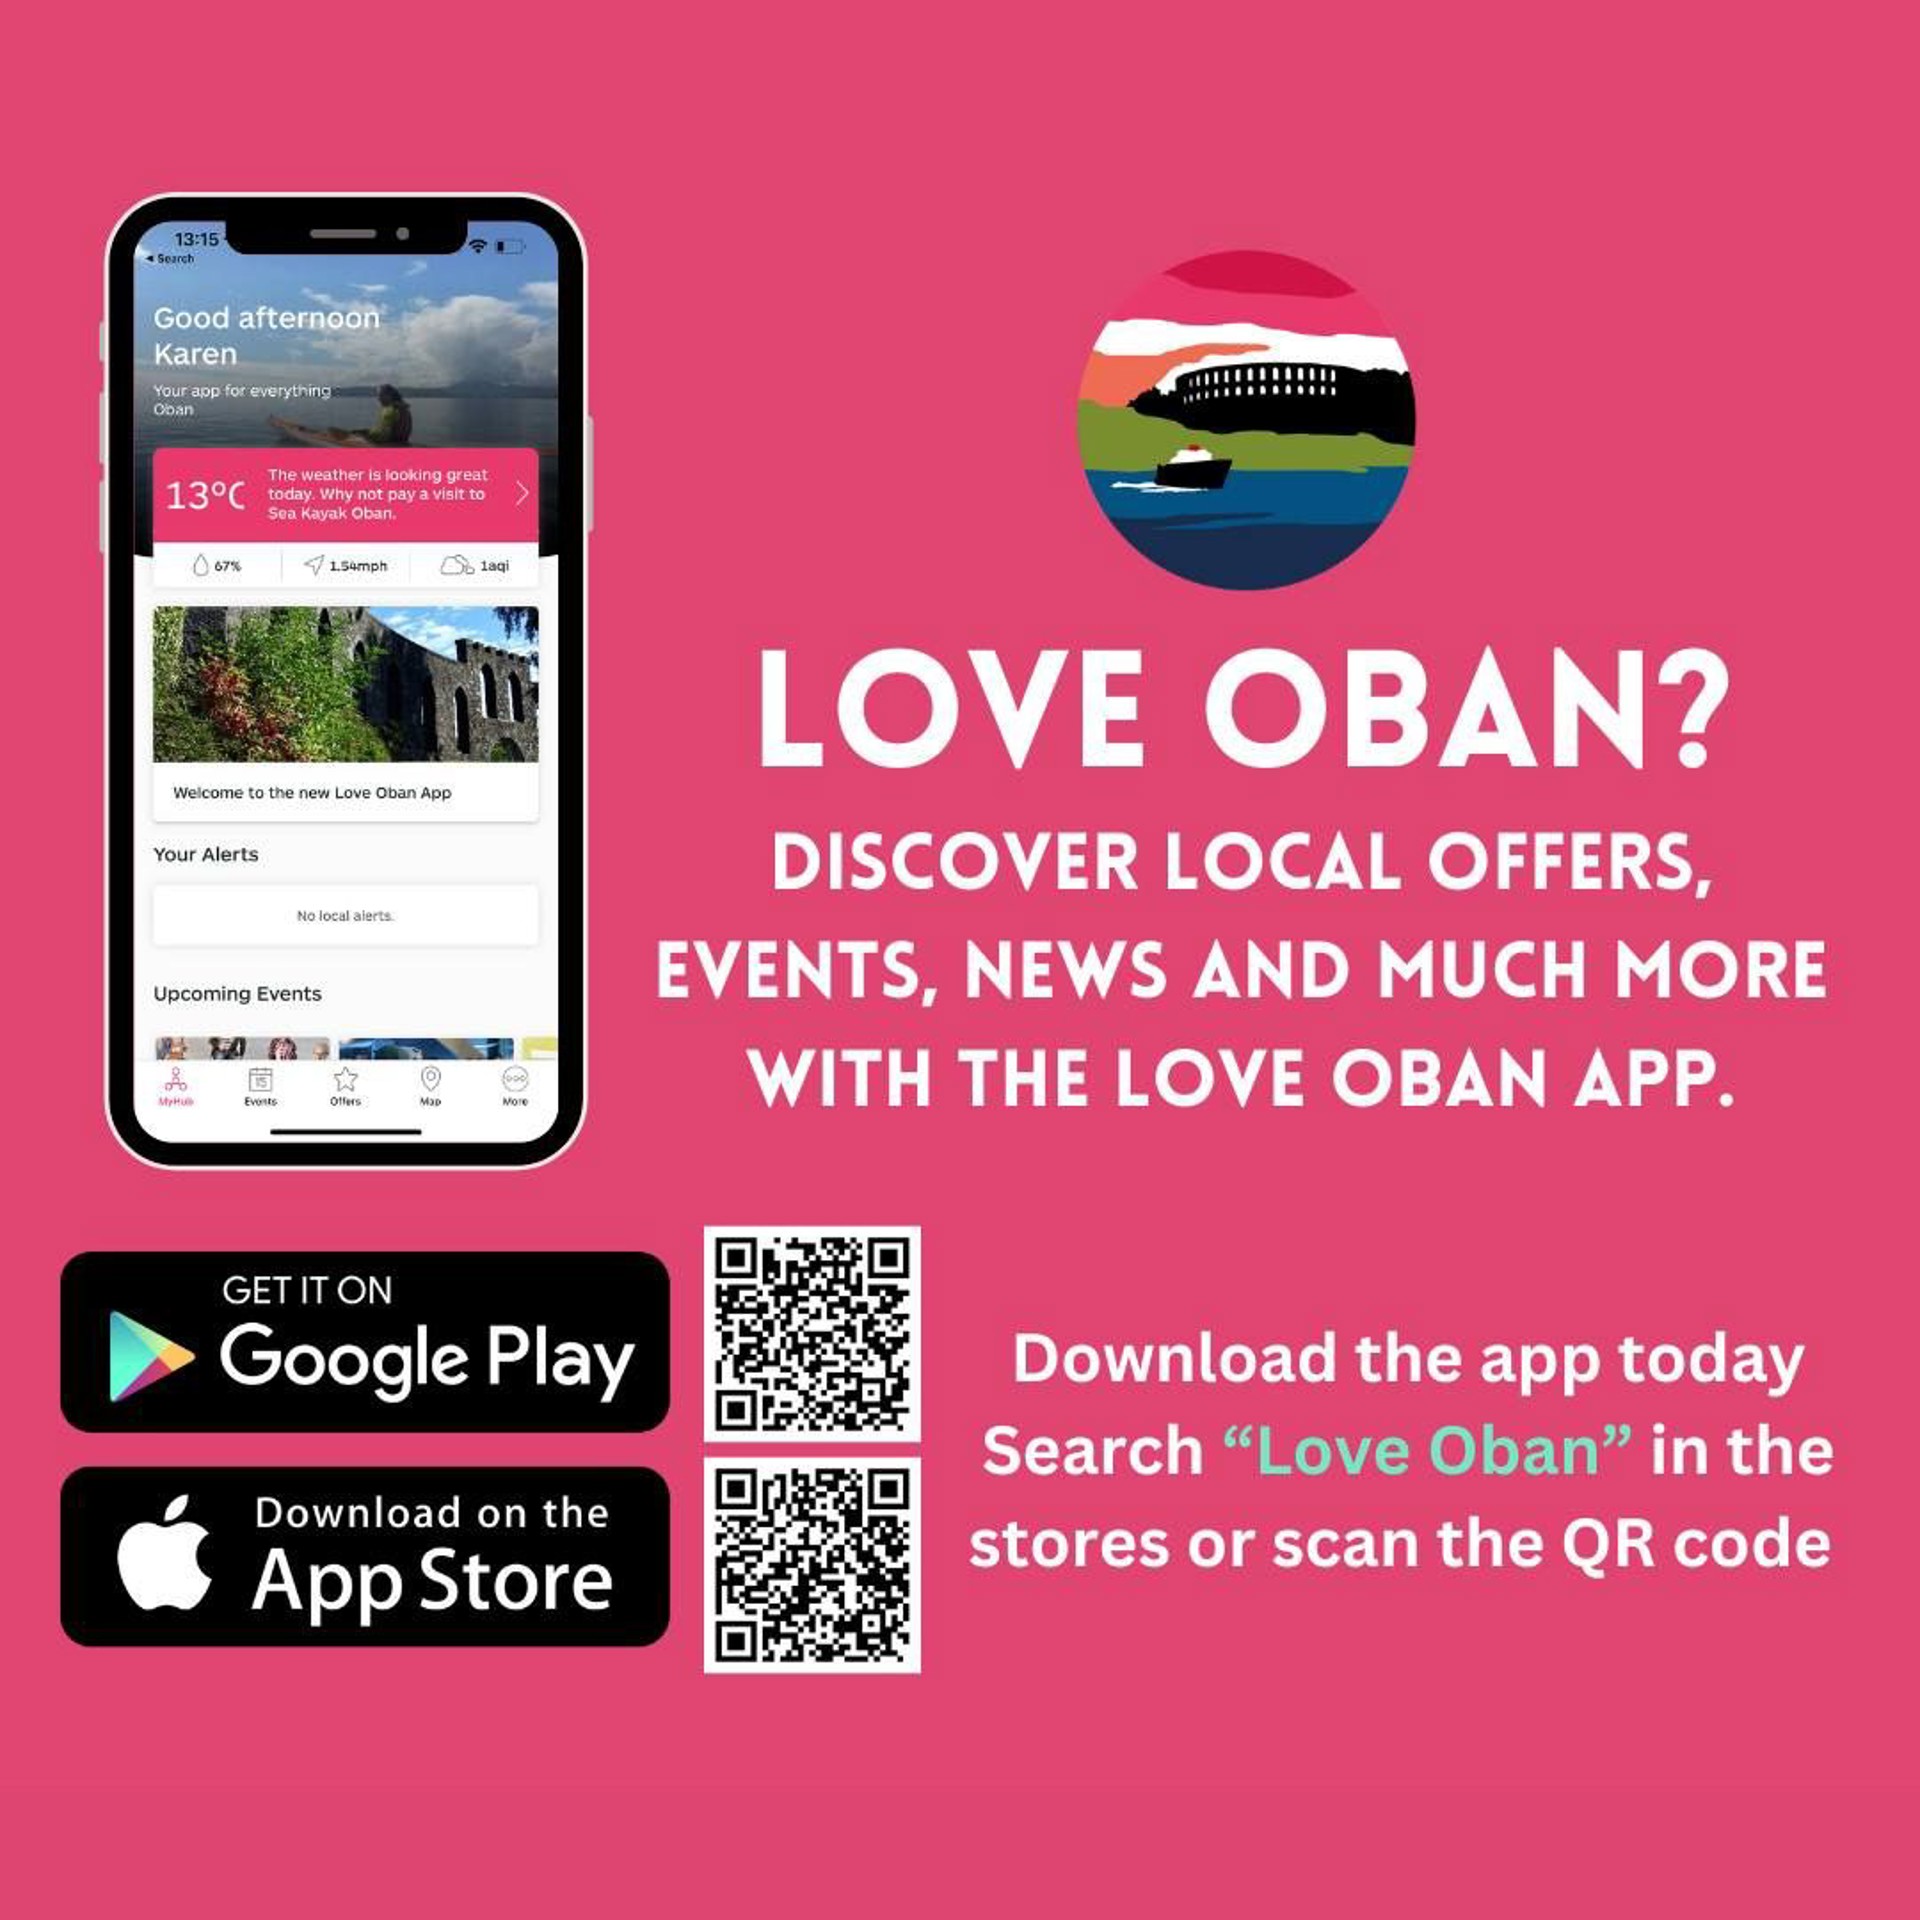 Background image - Love Oban App